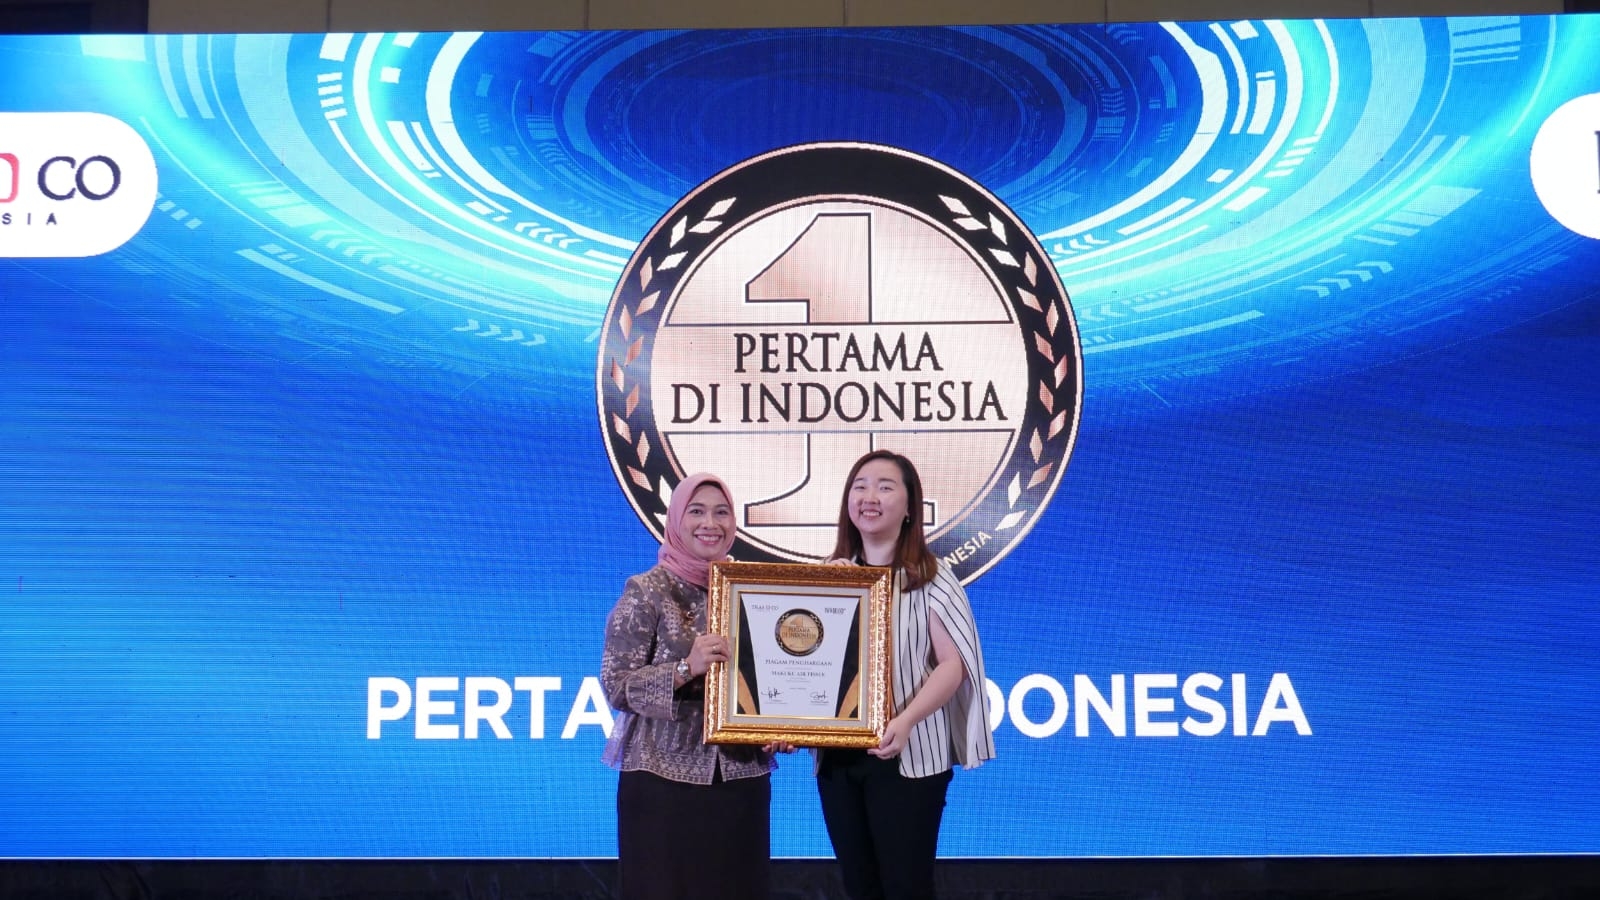 MAKUKU Buktikan Komitmen: MAKUKU Mendapatkan Penghargaan Popok SAP dan Fitur Buble Belt Pertama di Indonesia dari INFOBRAND.ID